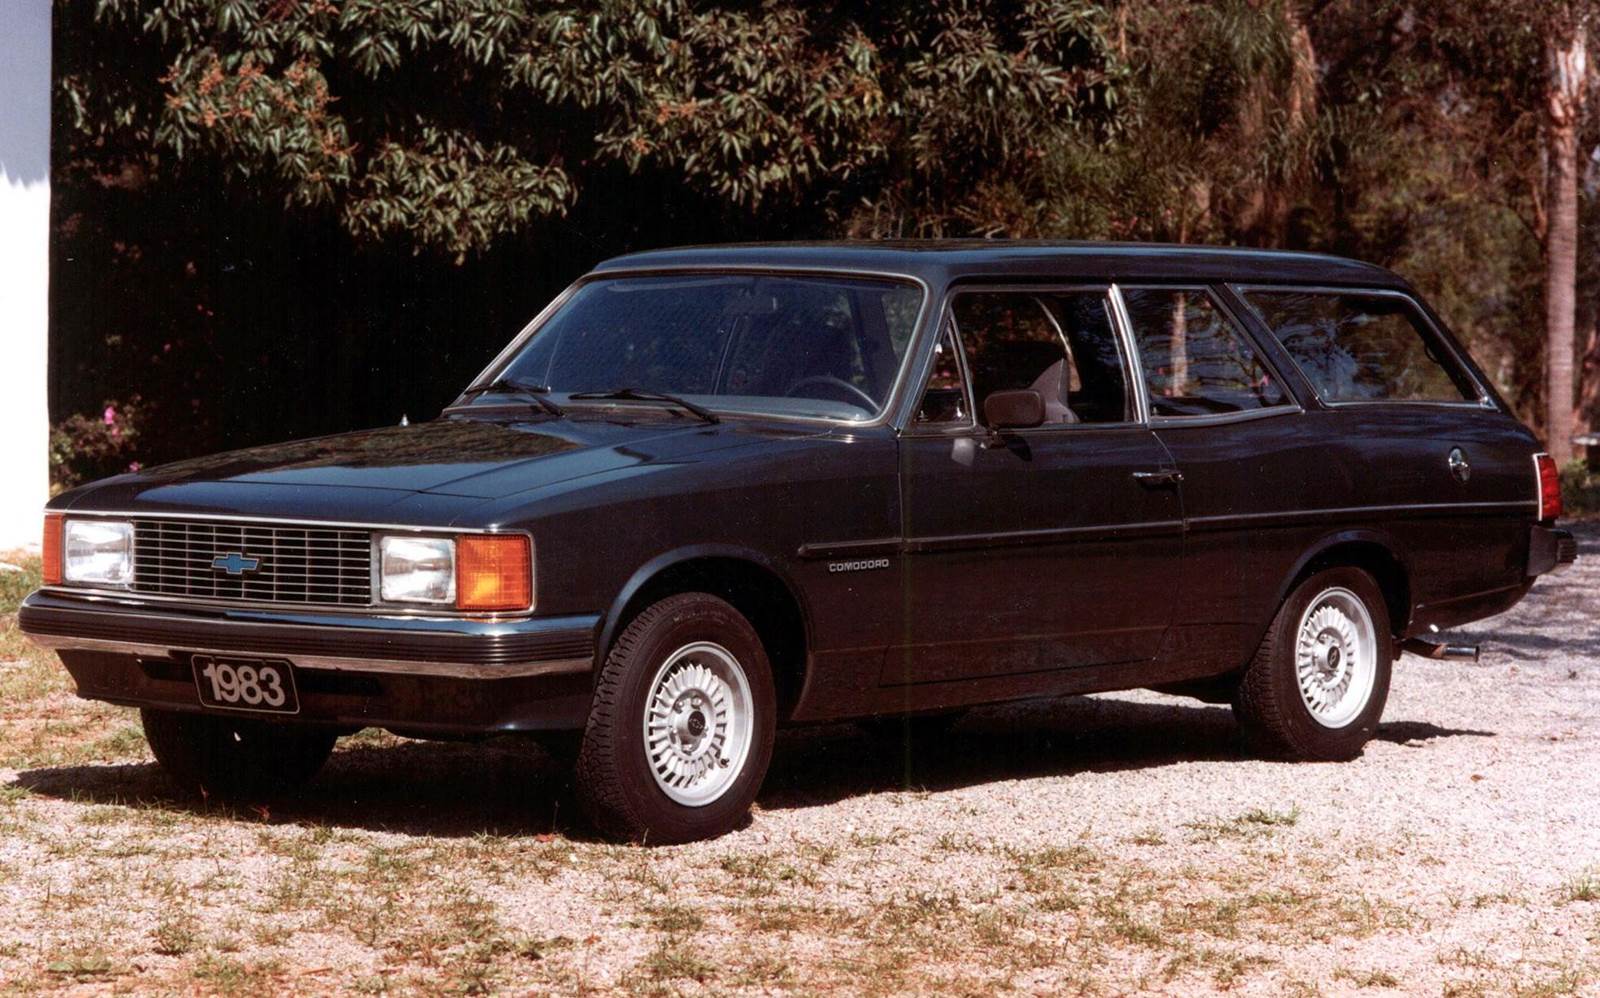 Chevrolet Opala no Brasil história, cronologia e fatos